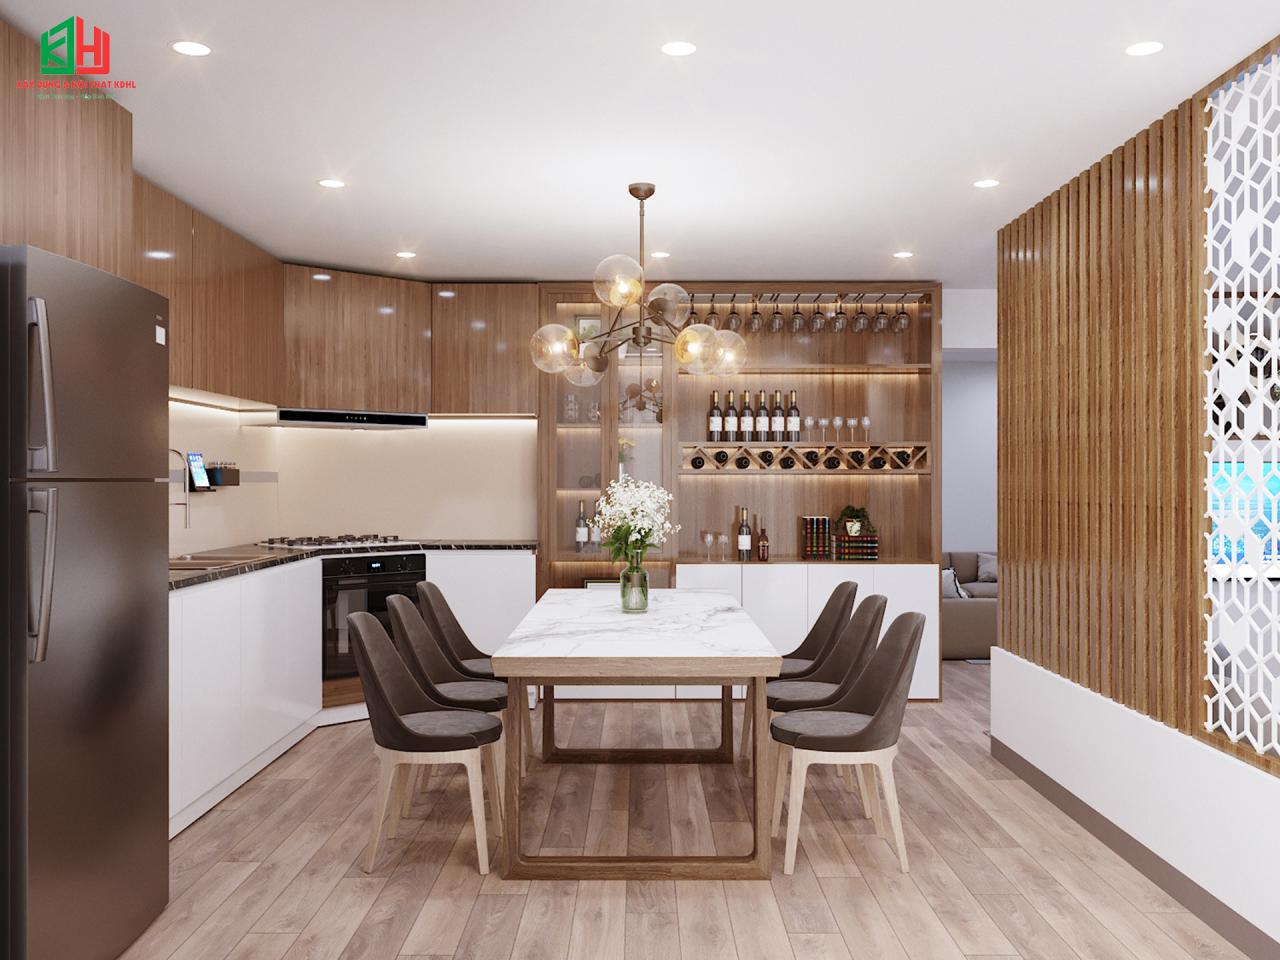 Bếp – Phòng ăn của mẫu thiết kế kiến trúc nhà cấp 4 sáng tạo, phong cách hiện đại (2)